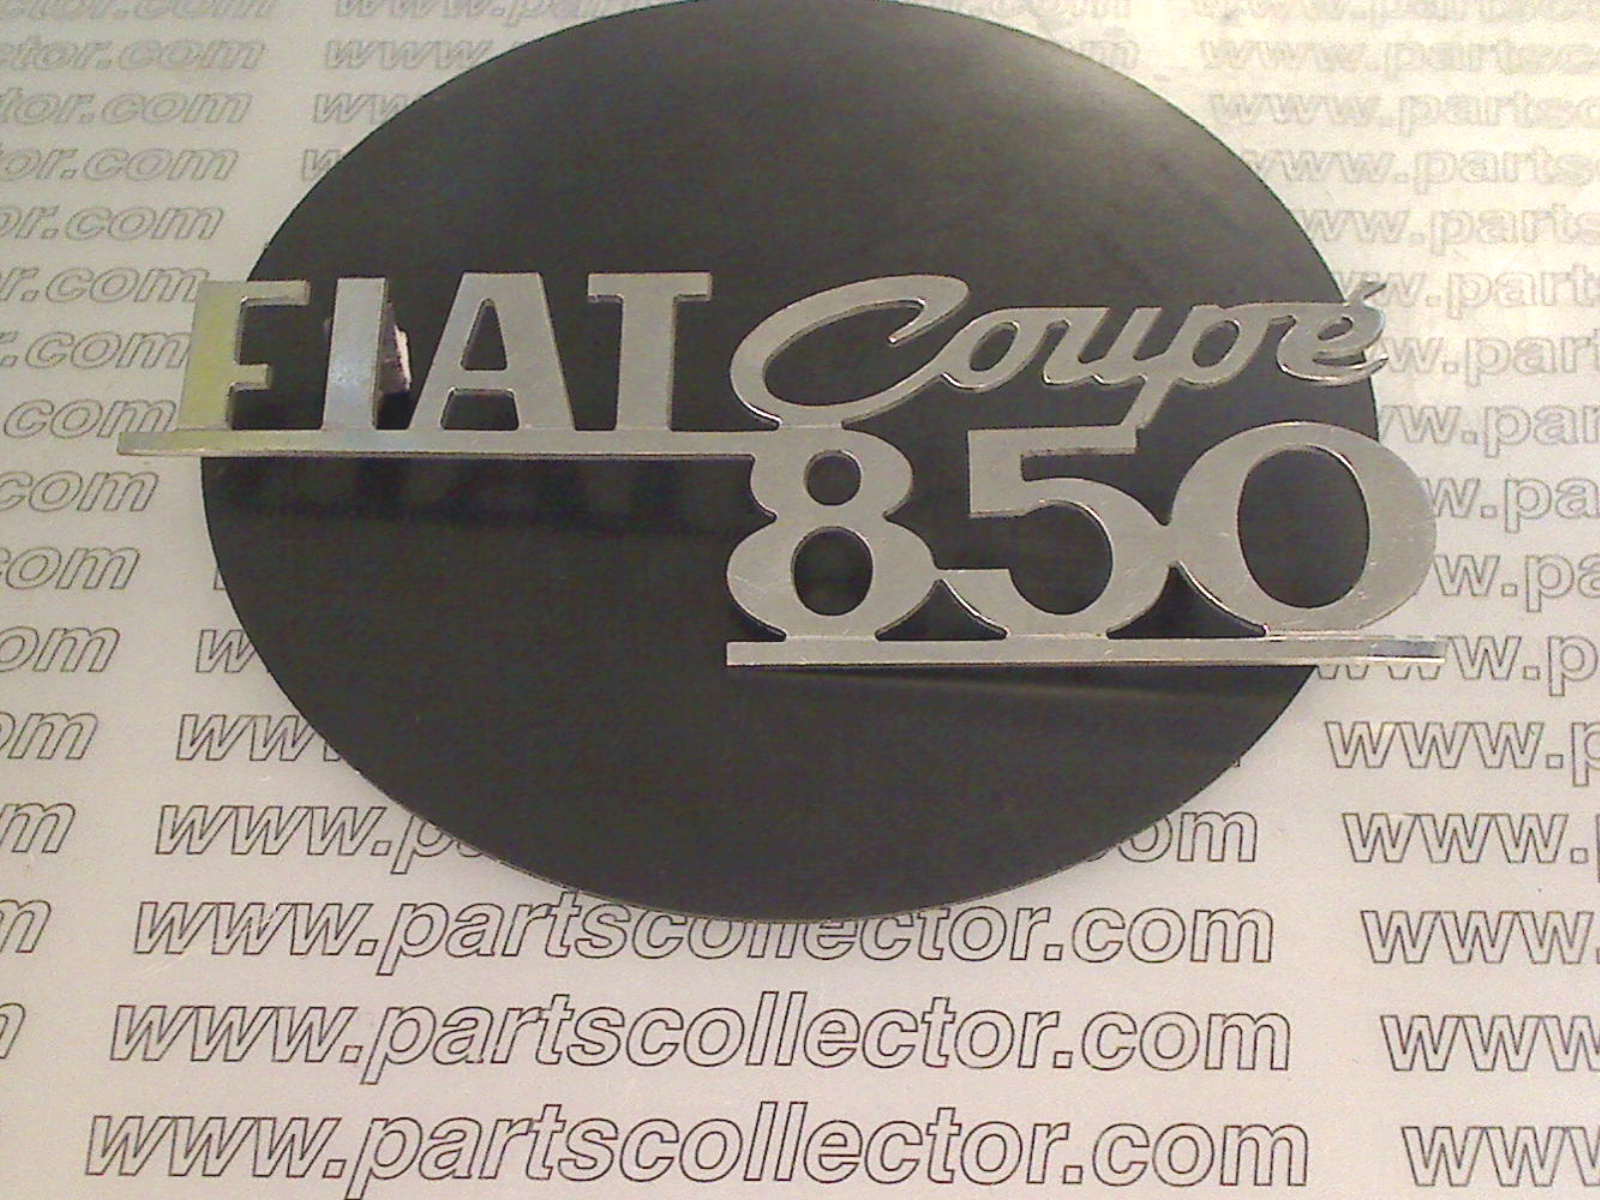 FIAT COUPE 850 EMBLEM